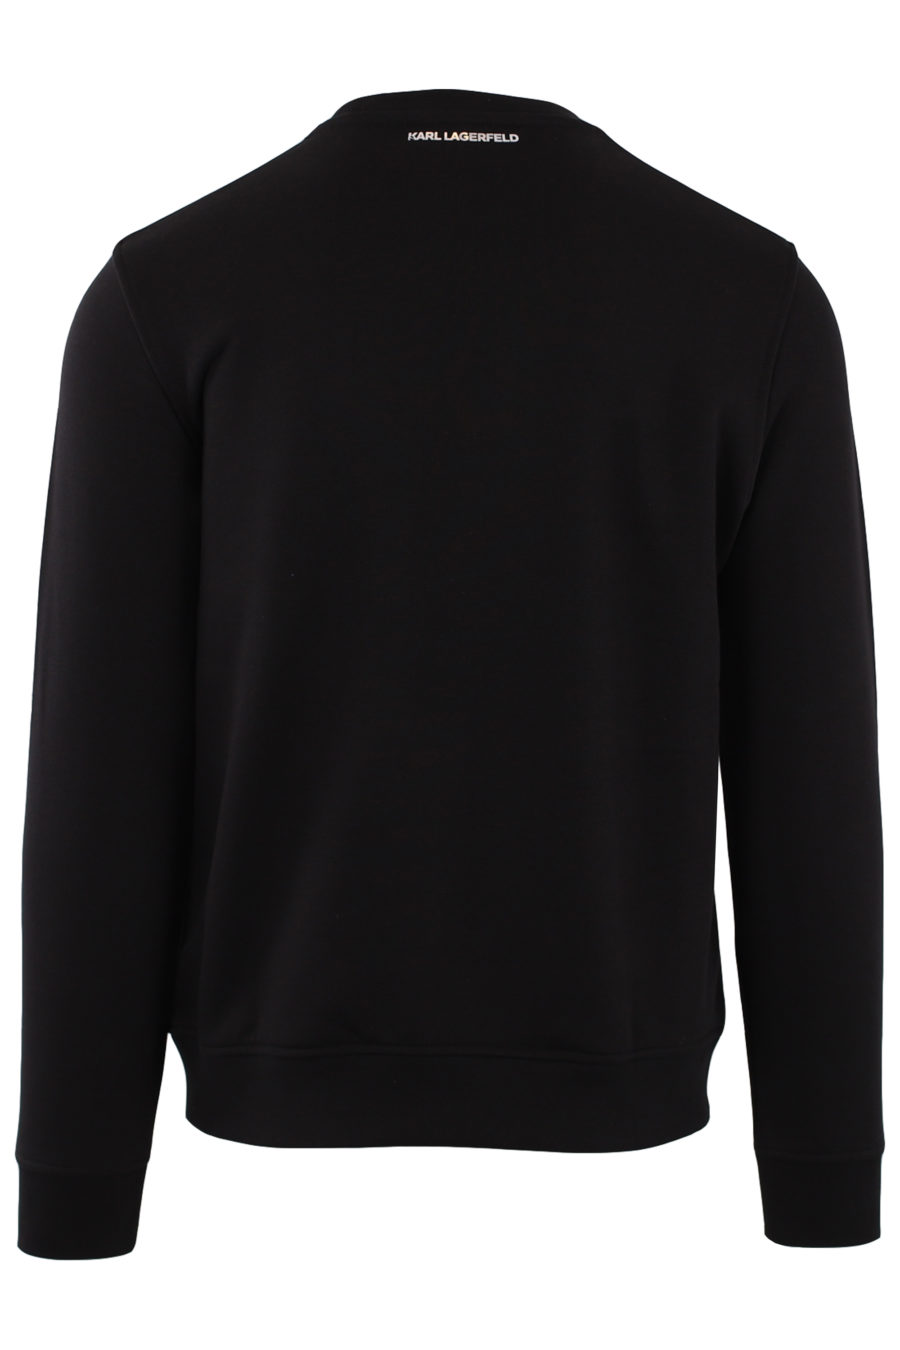 Black sweatshirt with embossed silver "Karl" - IMG 9140